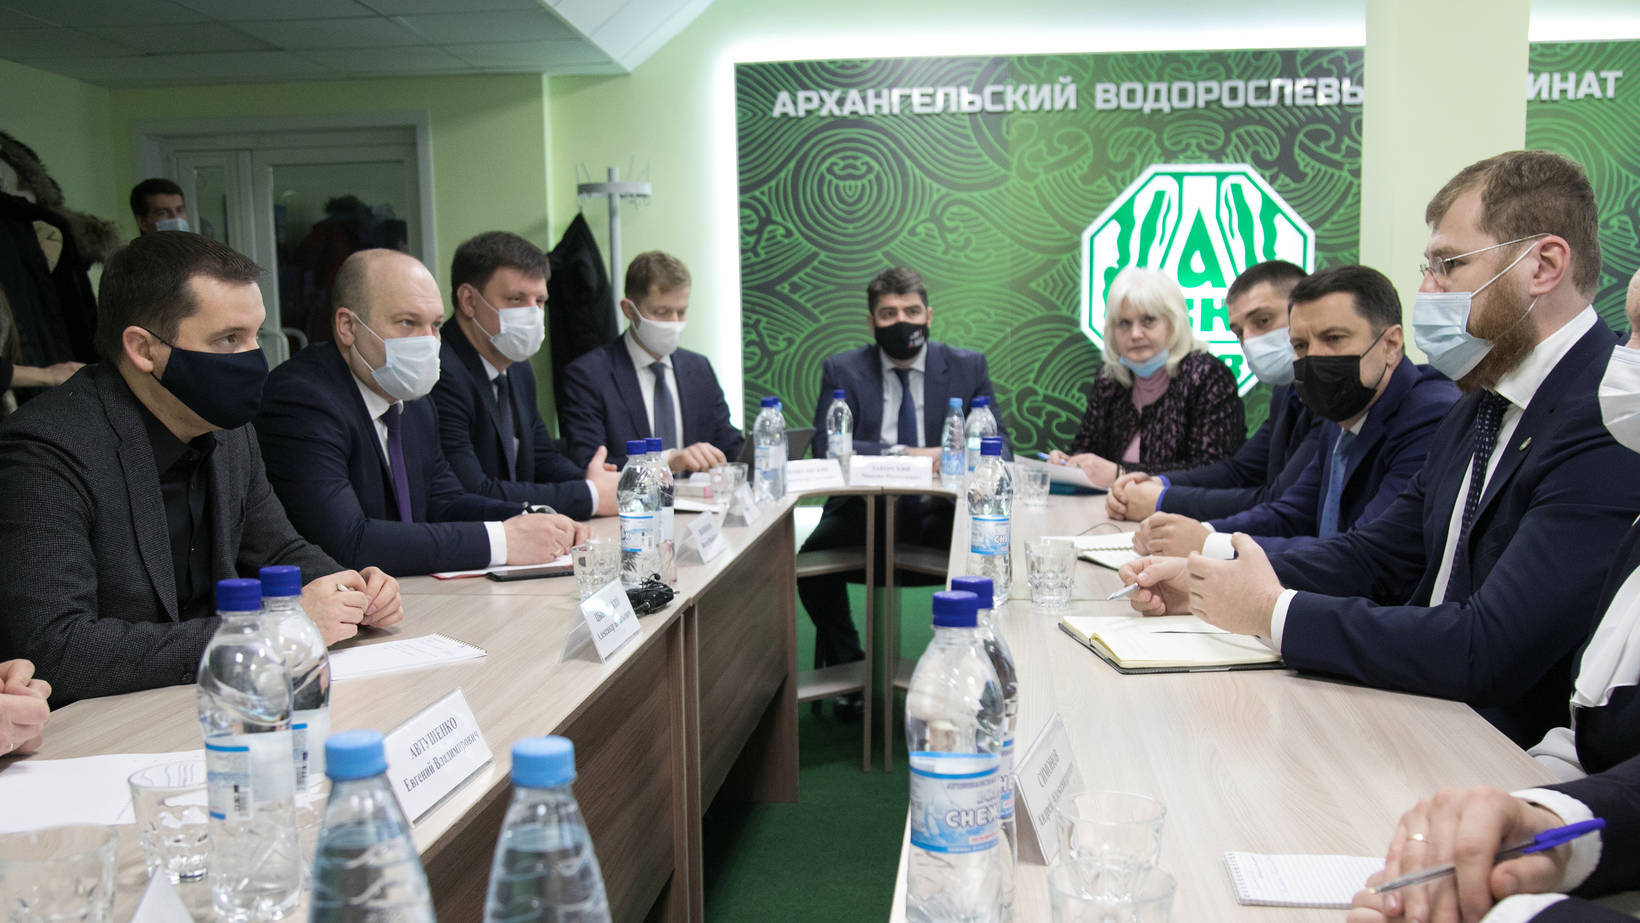 Агентство регионального развития продвигает возможности Архангельского водорослевого комбината на российском и международном рынках